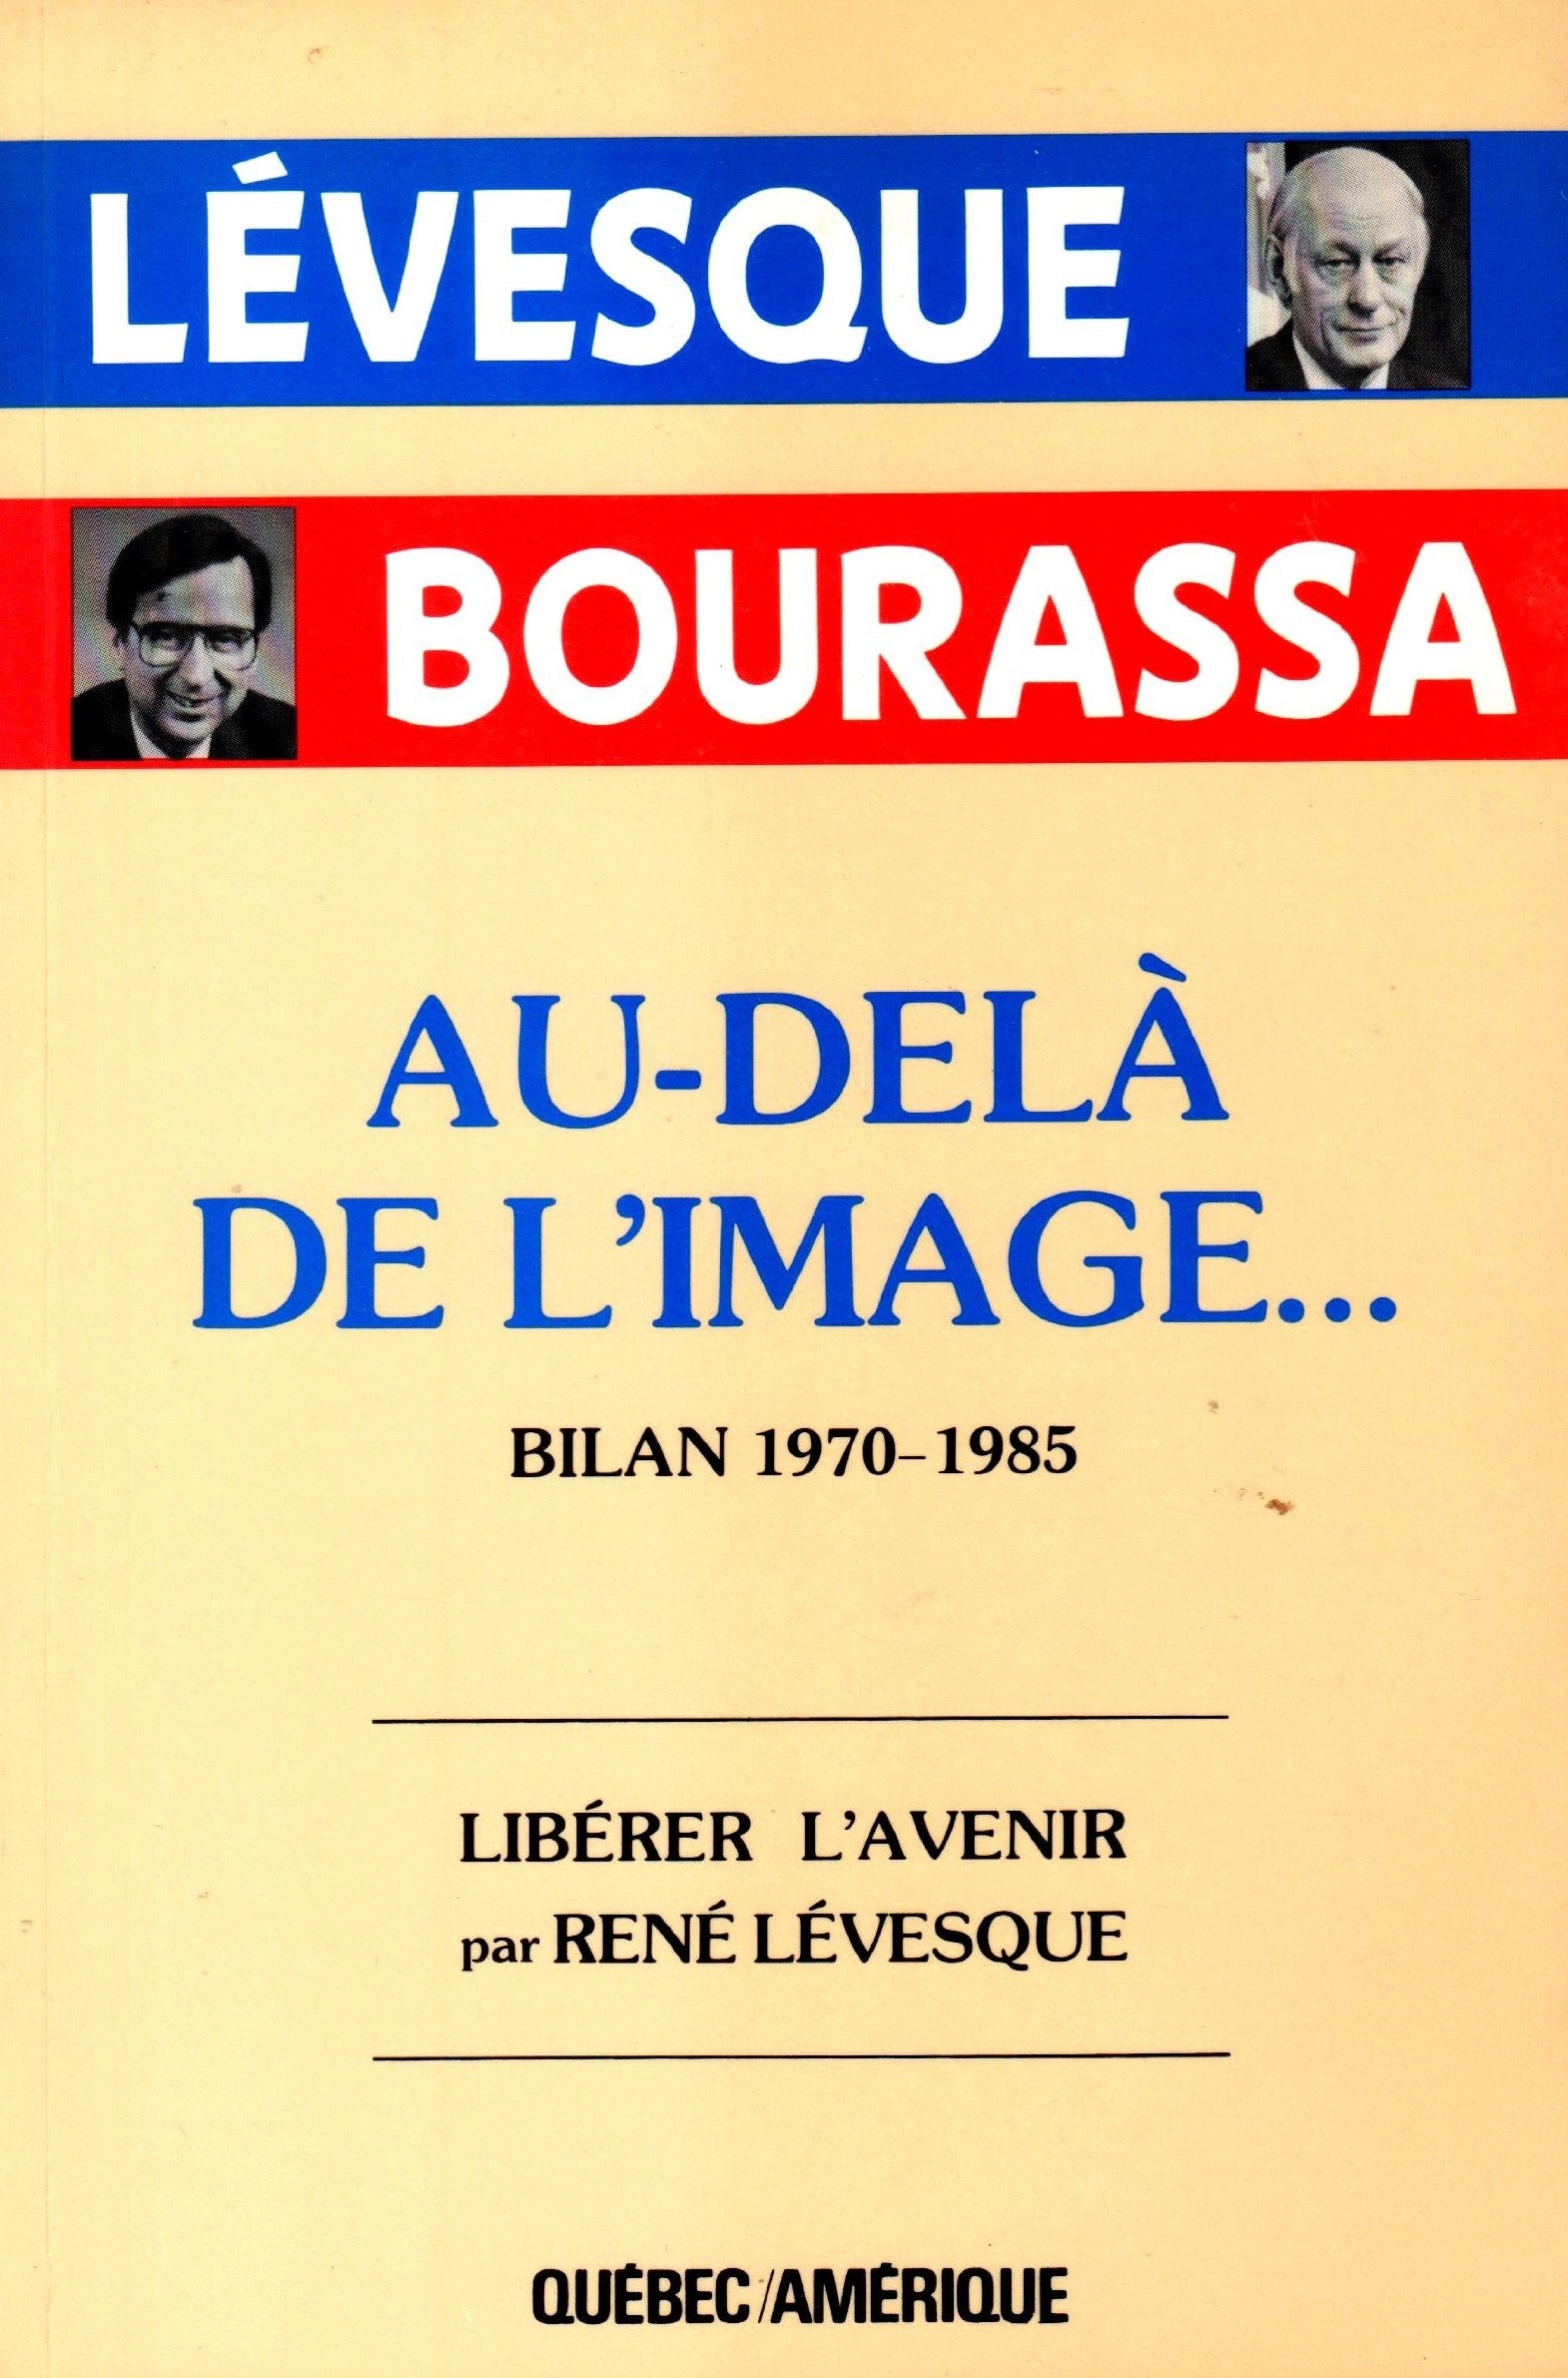 Livre ISBN 2890372561 Au-delà de l'image... Bilan 1970-1985 : Libérer l'avenir pas René Lévesque (René Lévesque)